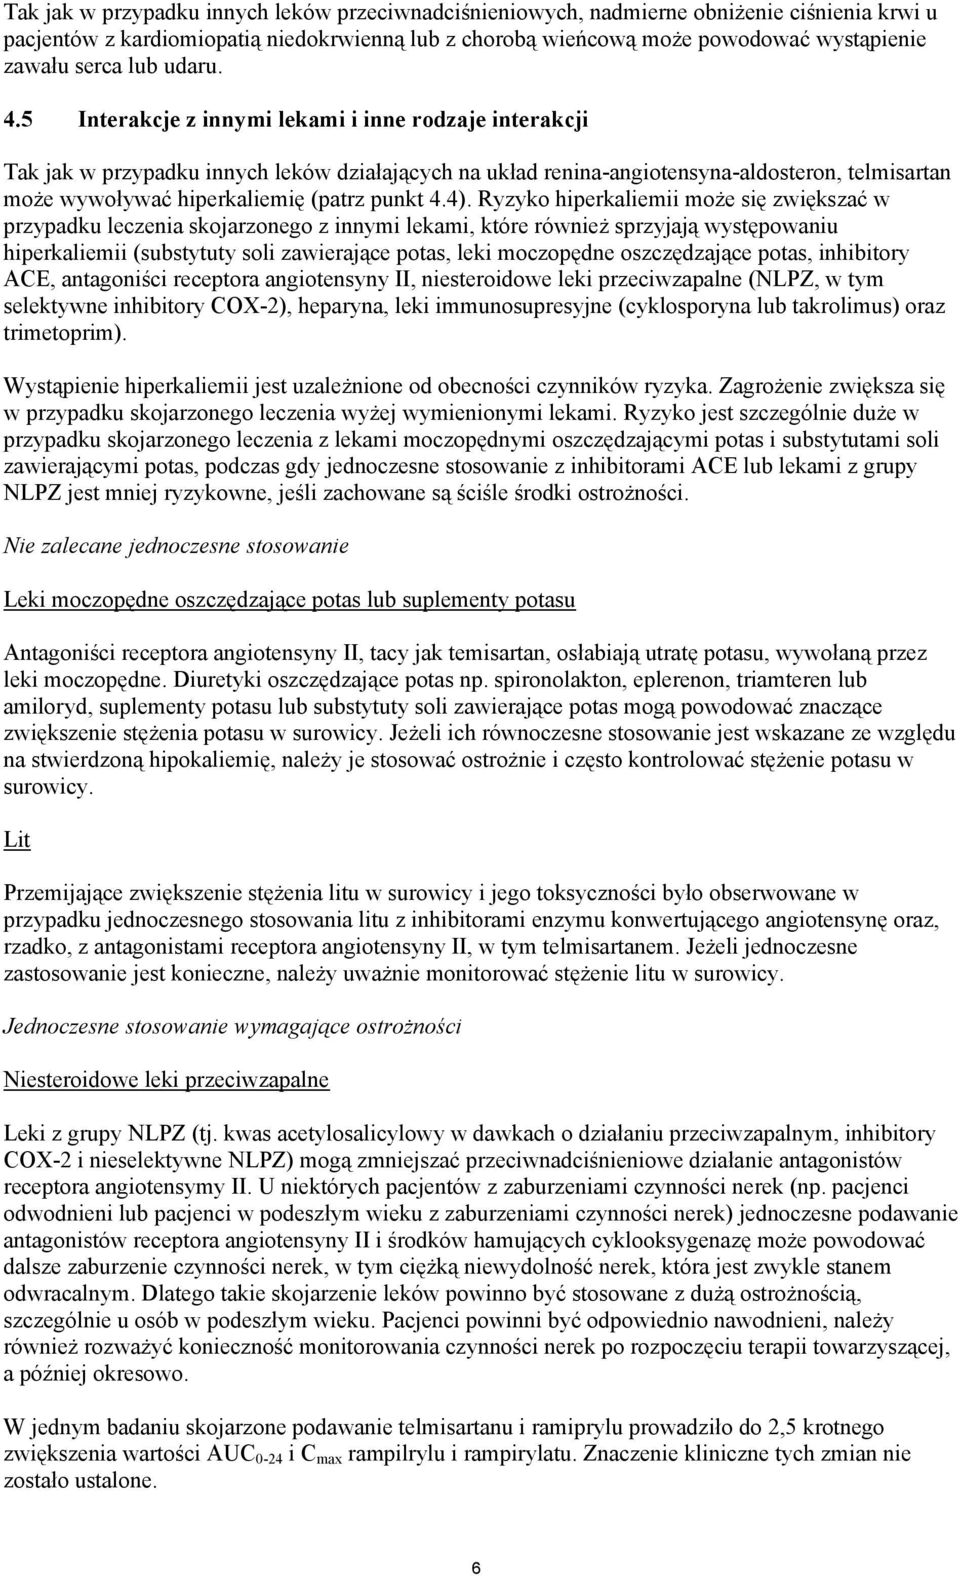 5 Interakcje z innymi lekami i inne rodzaje interakcji Tak jak w przypadku innych leków działających na układ renina-angiotensyna-aldosteron, telmisartan może wywoływać hiperkaliemię (patrz punkt 4.